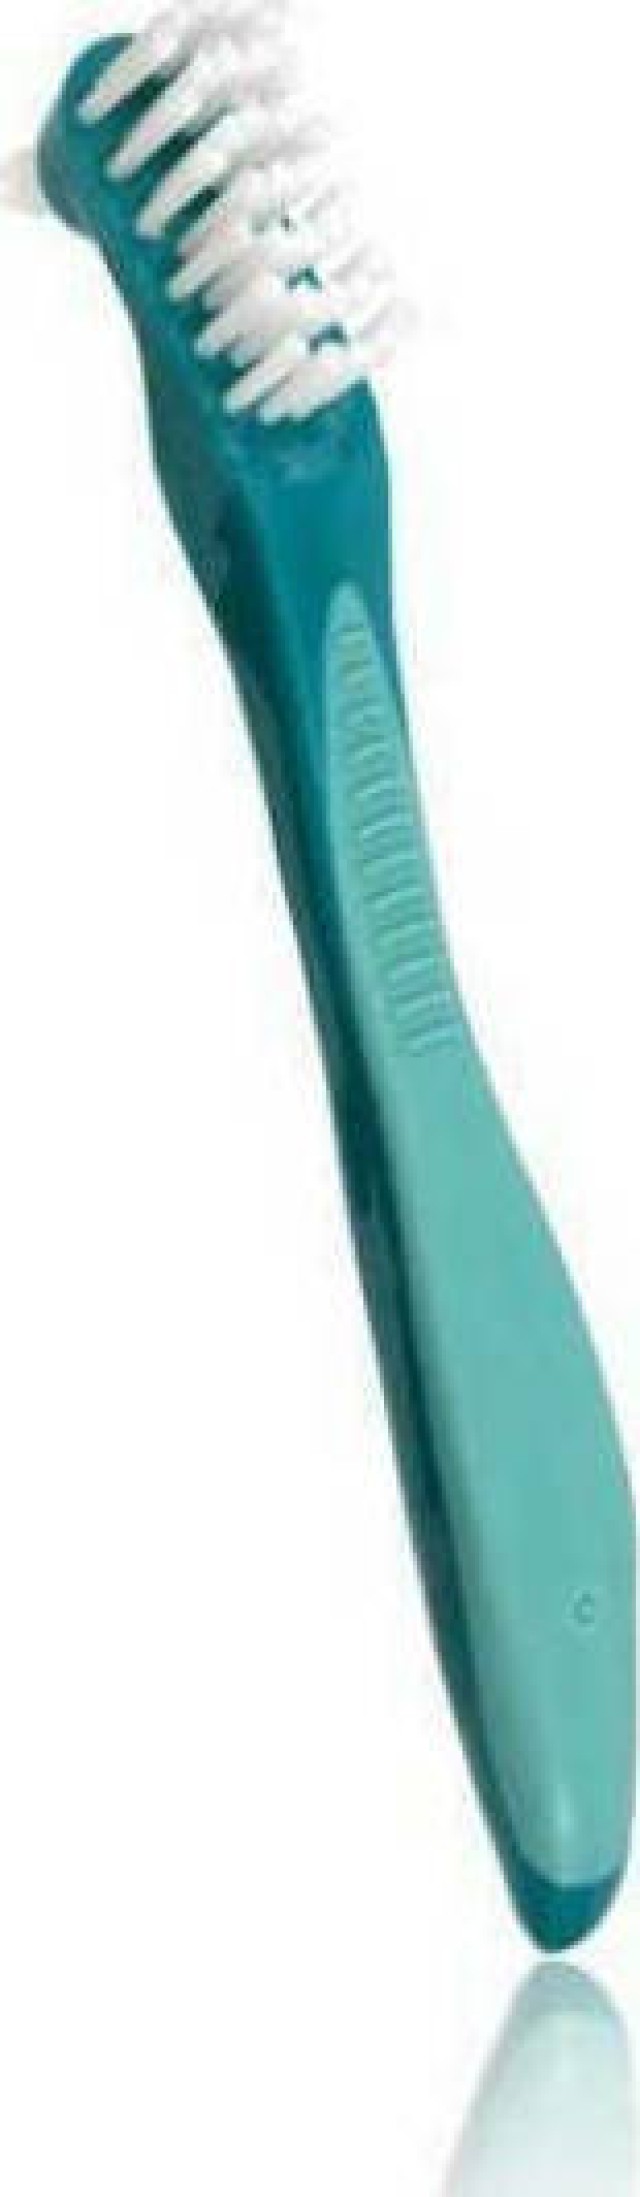 Gum 201 Denture Brush Οδοντόβουρτσα για τεχνητή οδοντοστοιχία Πρασινη, 1τμχ